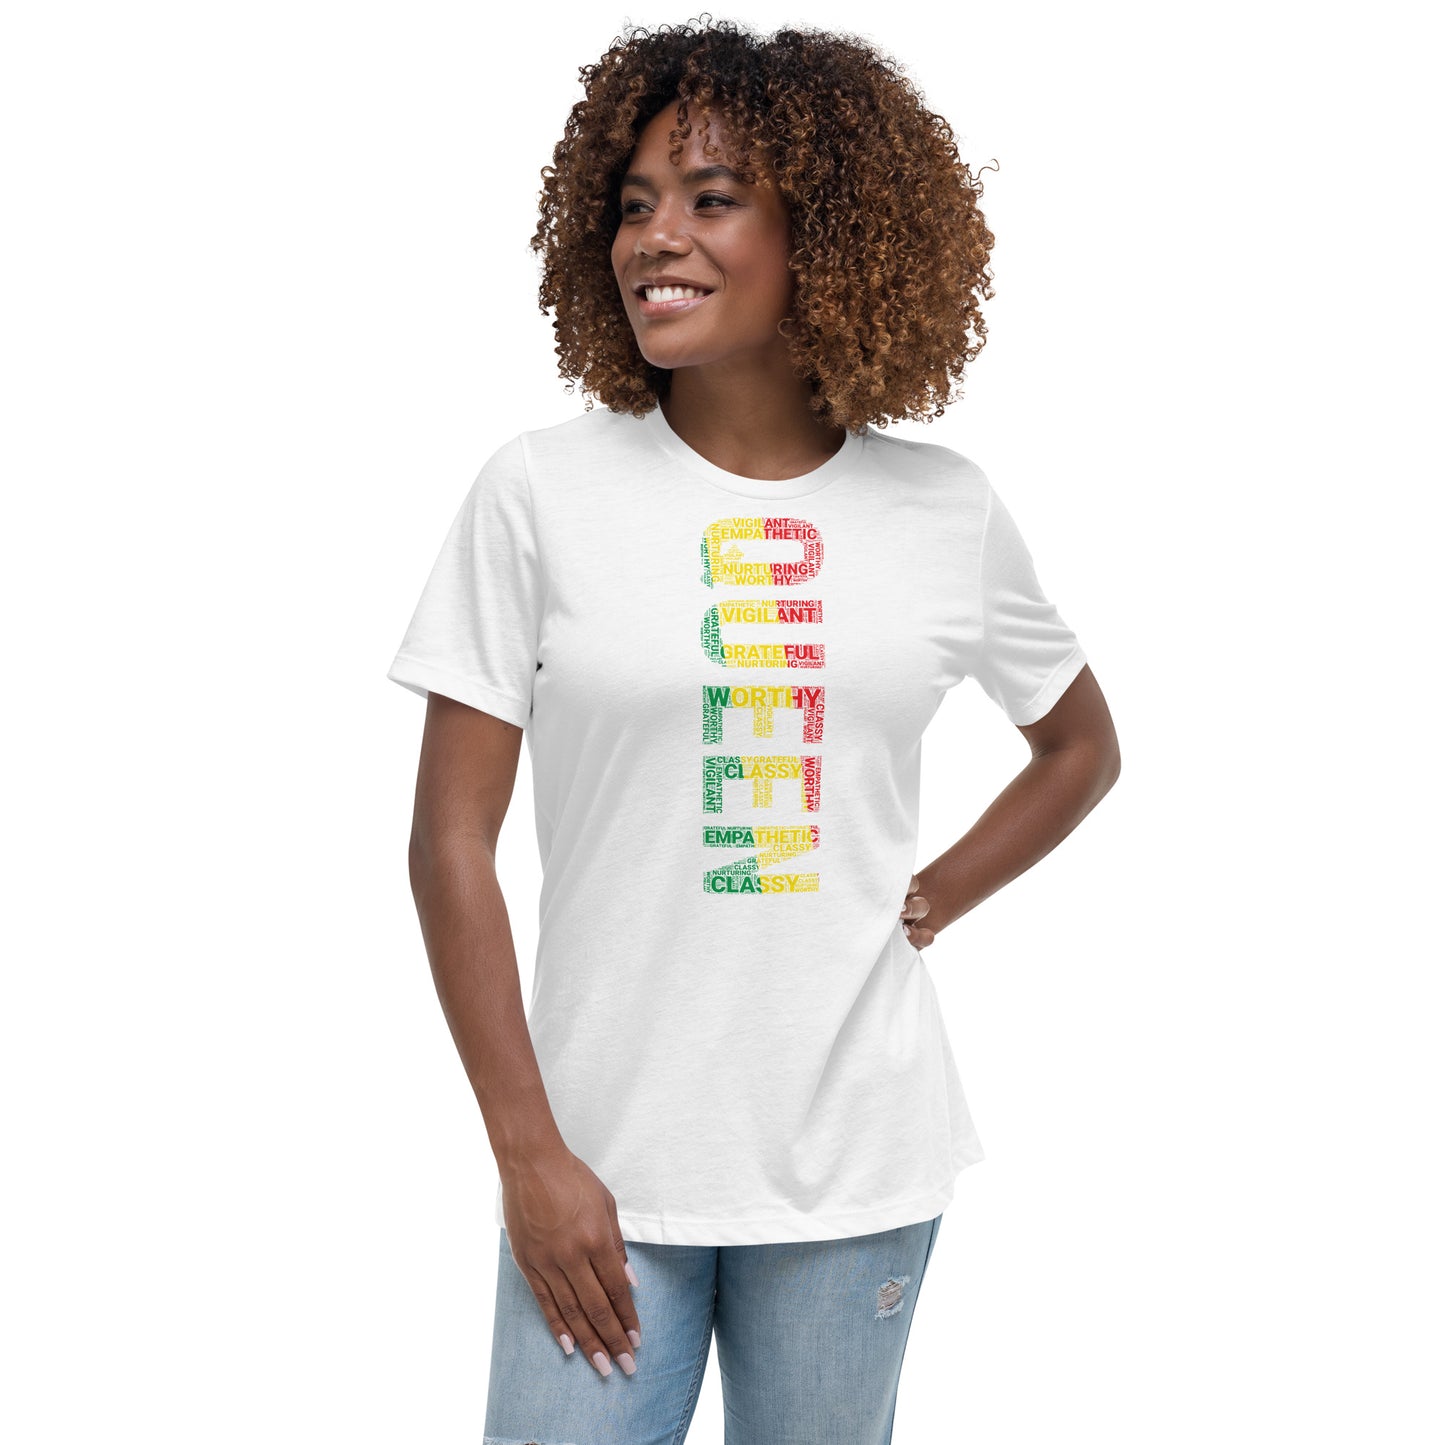 QUEEN Pan African Inspired (Vertical) Women's short sleeve t-shirt